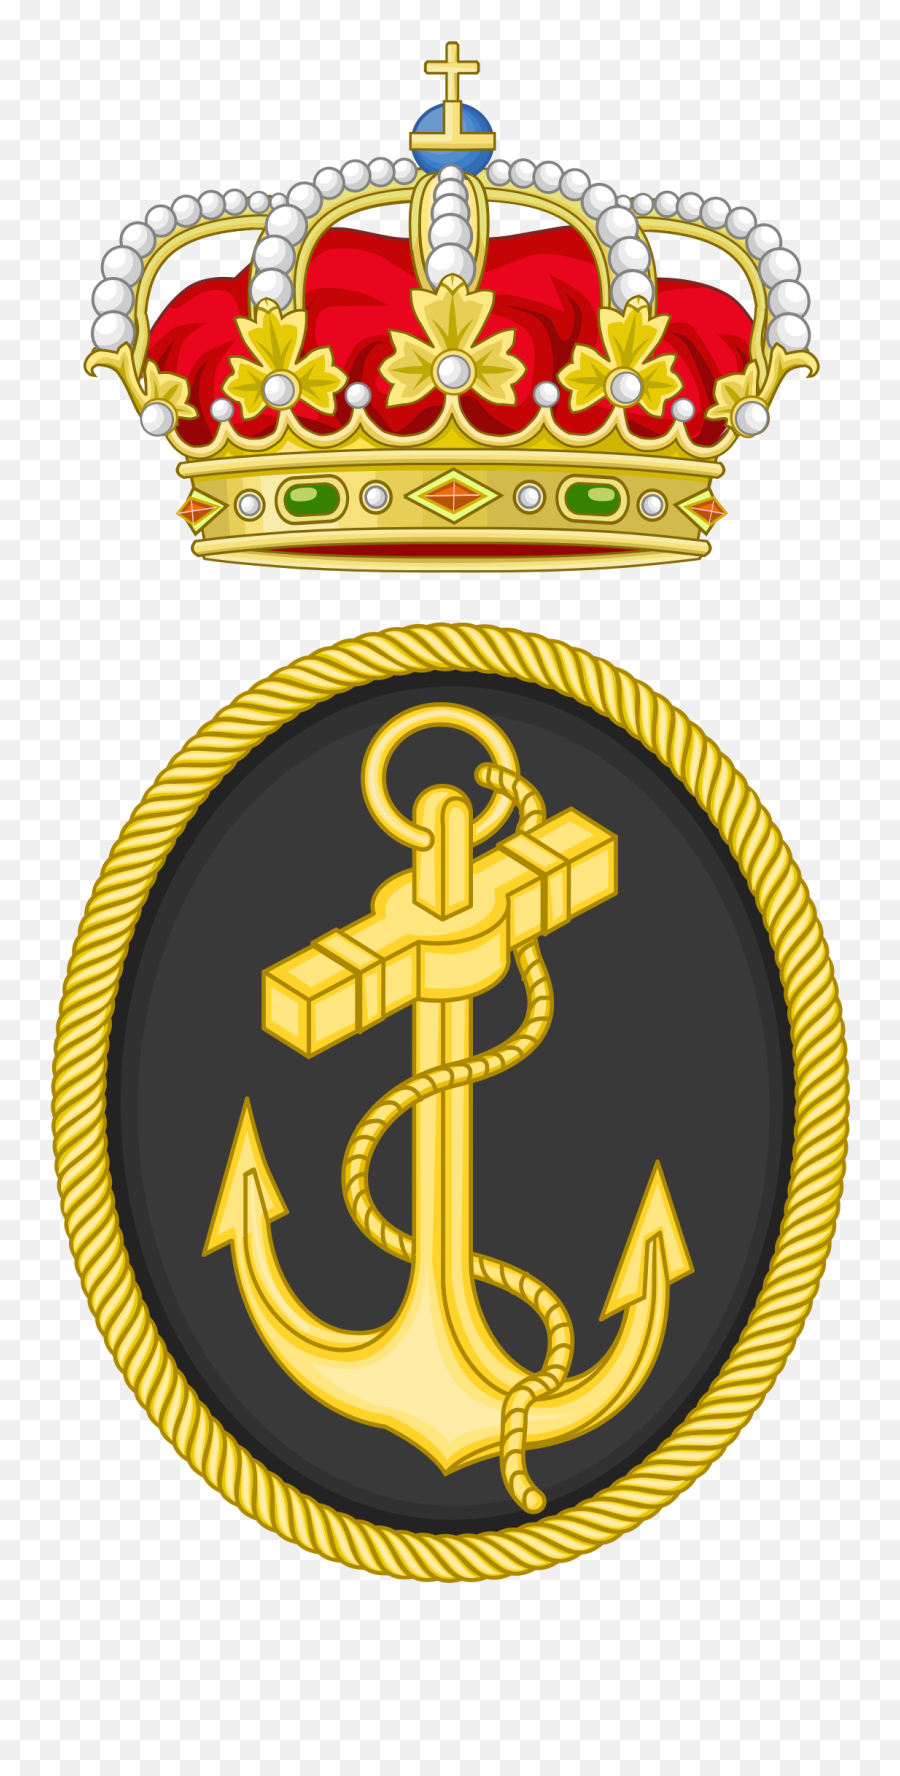 Armada Española - Wikipedia La Enciclopedia Libre Coat Of Arms Template With Crown Emoji,Emoticon Bandera Republicana